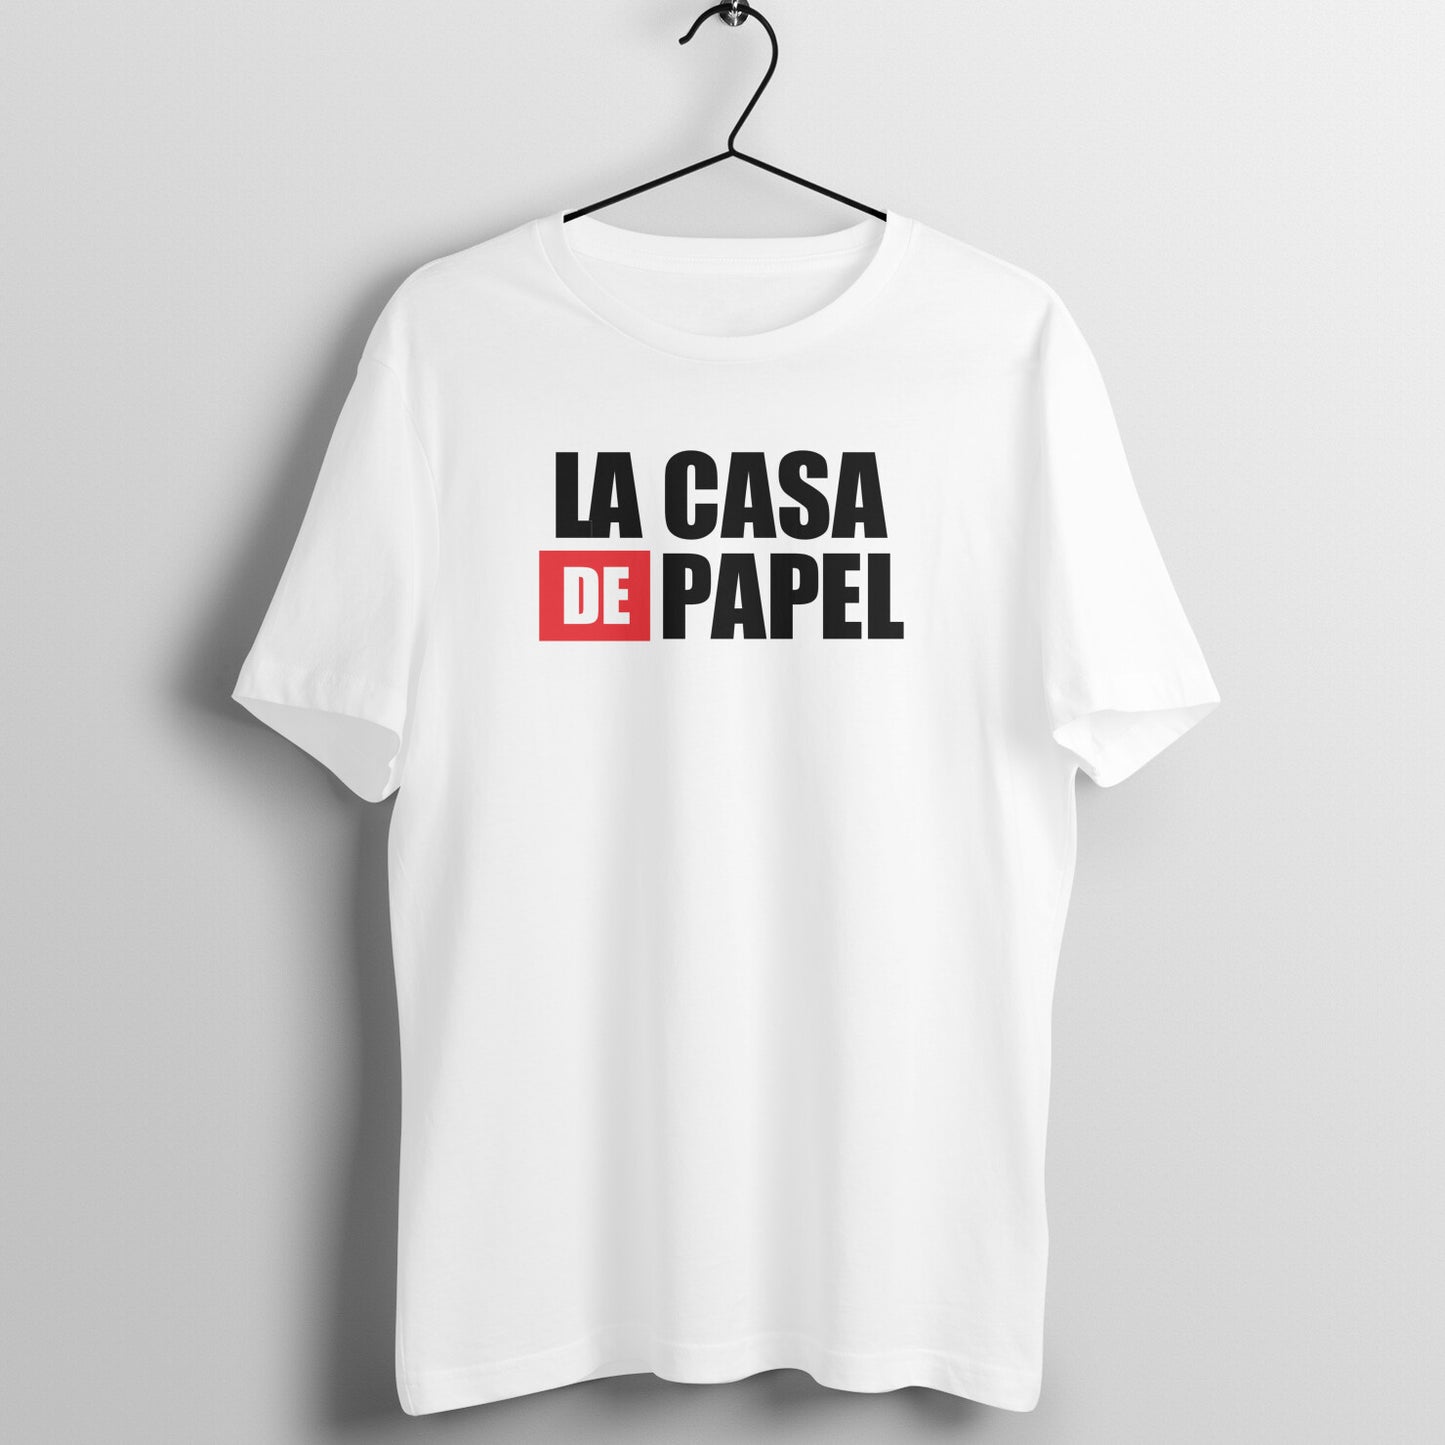 LA CASA DE PAPEL - Money Heist T-shirt